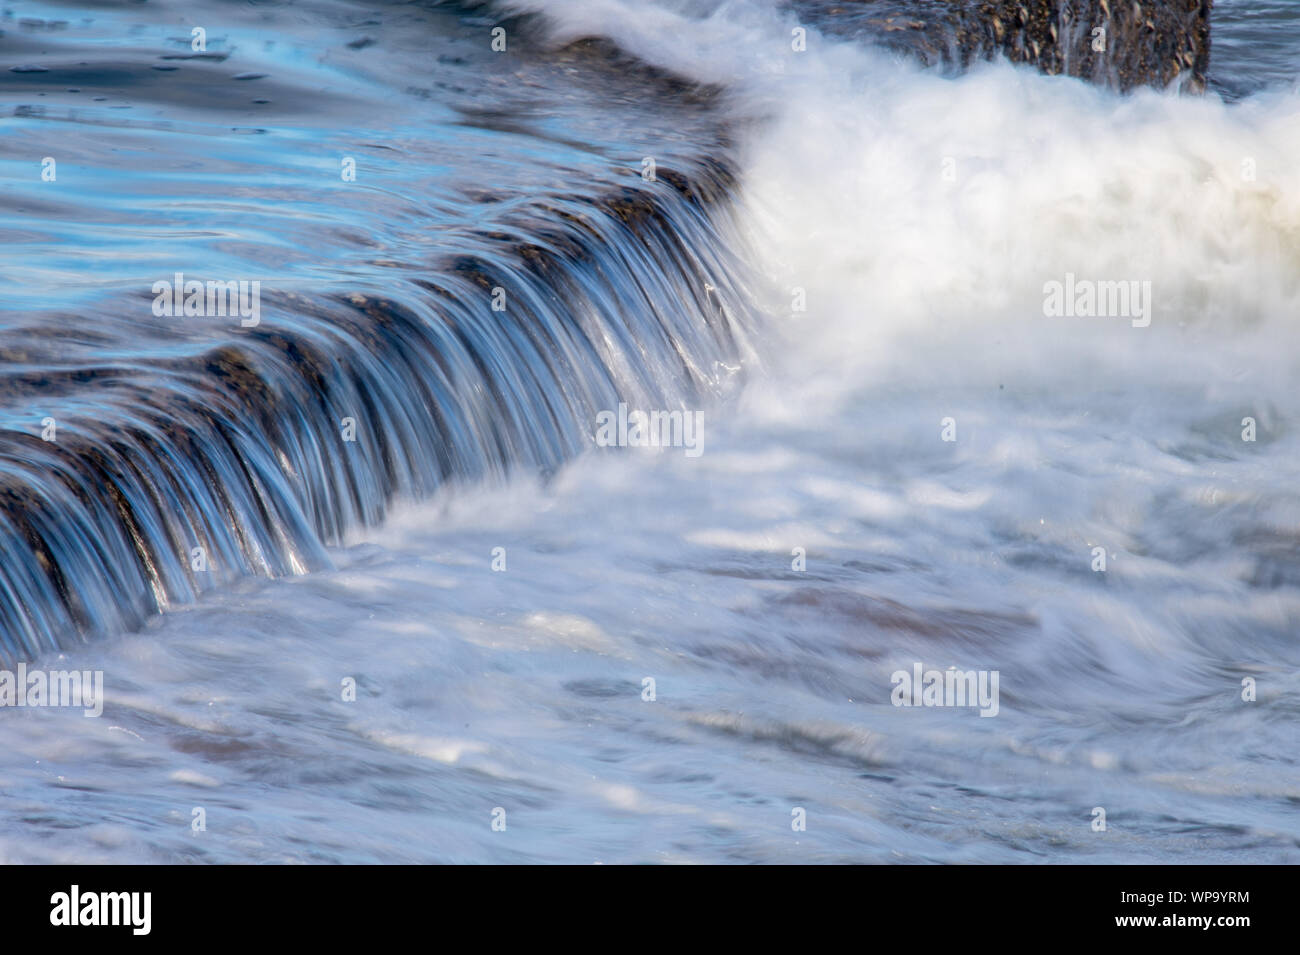 Après-midi, une forte marée montante avec des vagues se brisant sur un bassin de marée mur et la création d'un trop-plein puissant surf mousseuse comme plante de lavage Banque D'Images